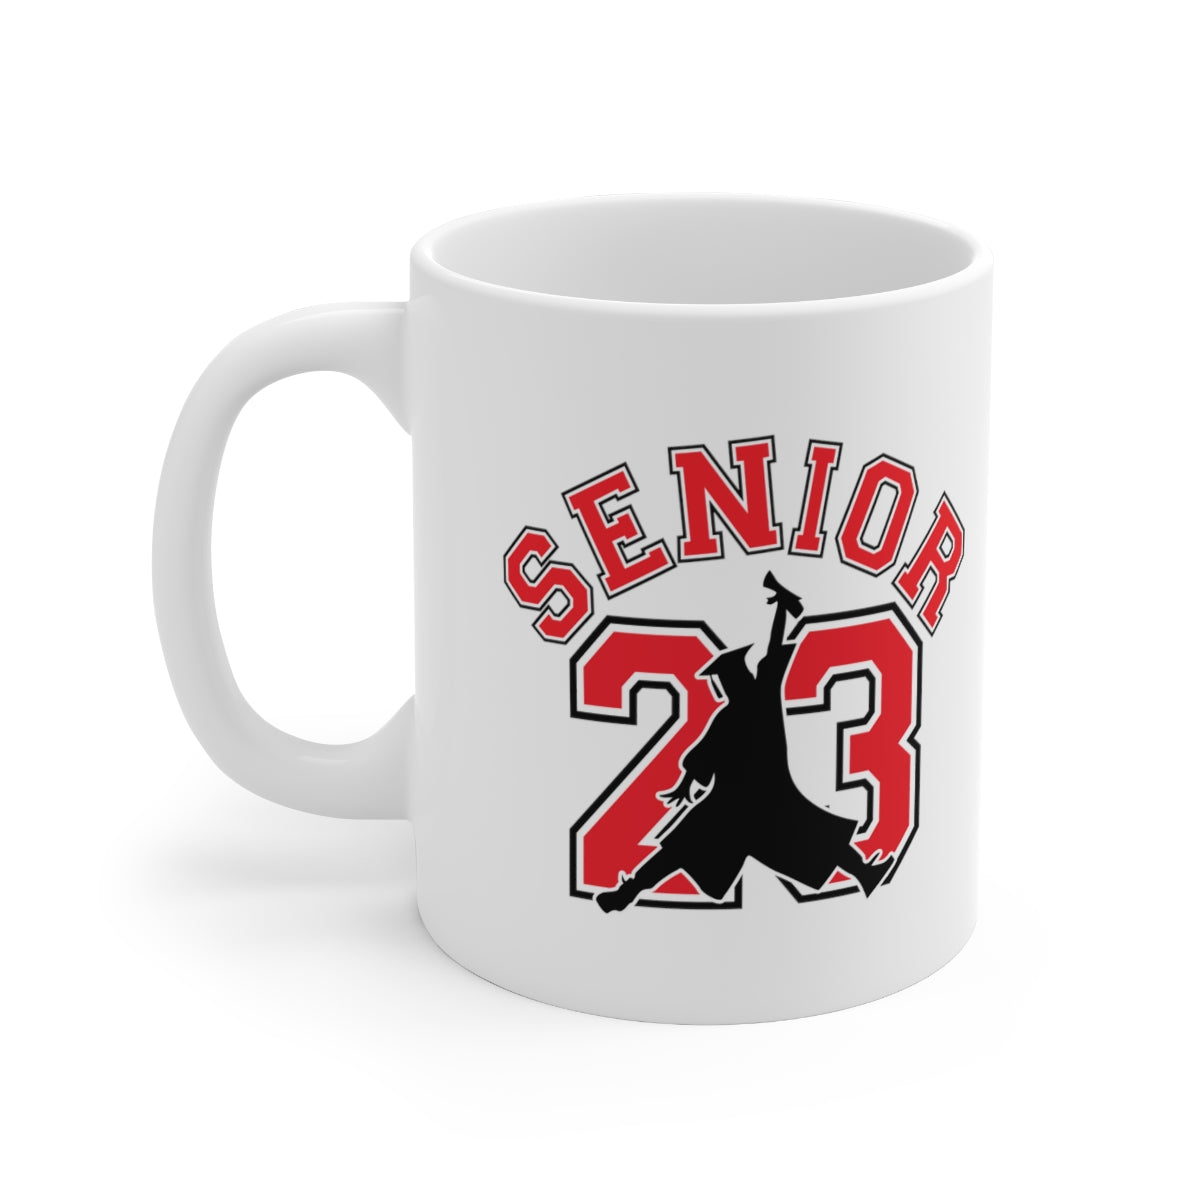 Senior 23 Graduation Ceramic Mug 11oz